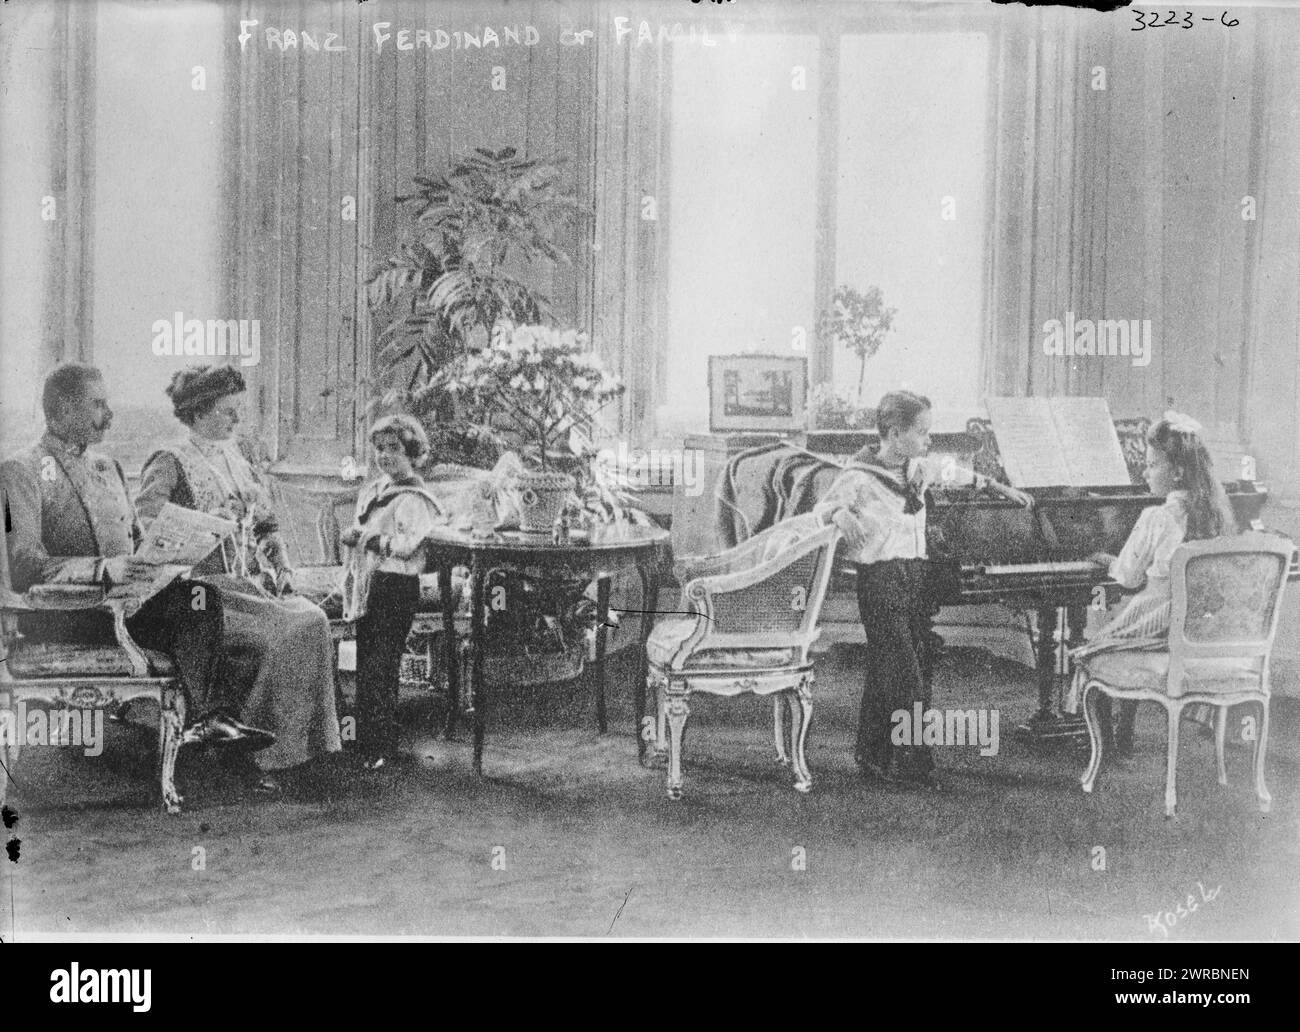 Francesco Ferdinando & famiglia, la fotografia mostra l'arciduca Francesco Ferdinando d'Austria (1863-1914) con sua moglie Sofia, duchessa di Hohenberg (1868-1914) e i loro figli. 1910 e ca. 1915, Glass negative, 1 negativo: Glass Foto Stock